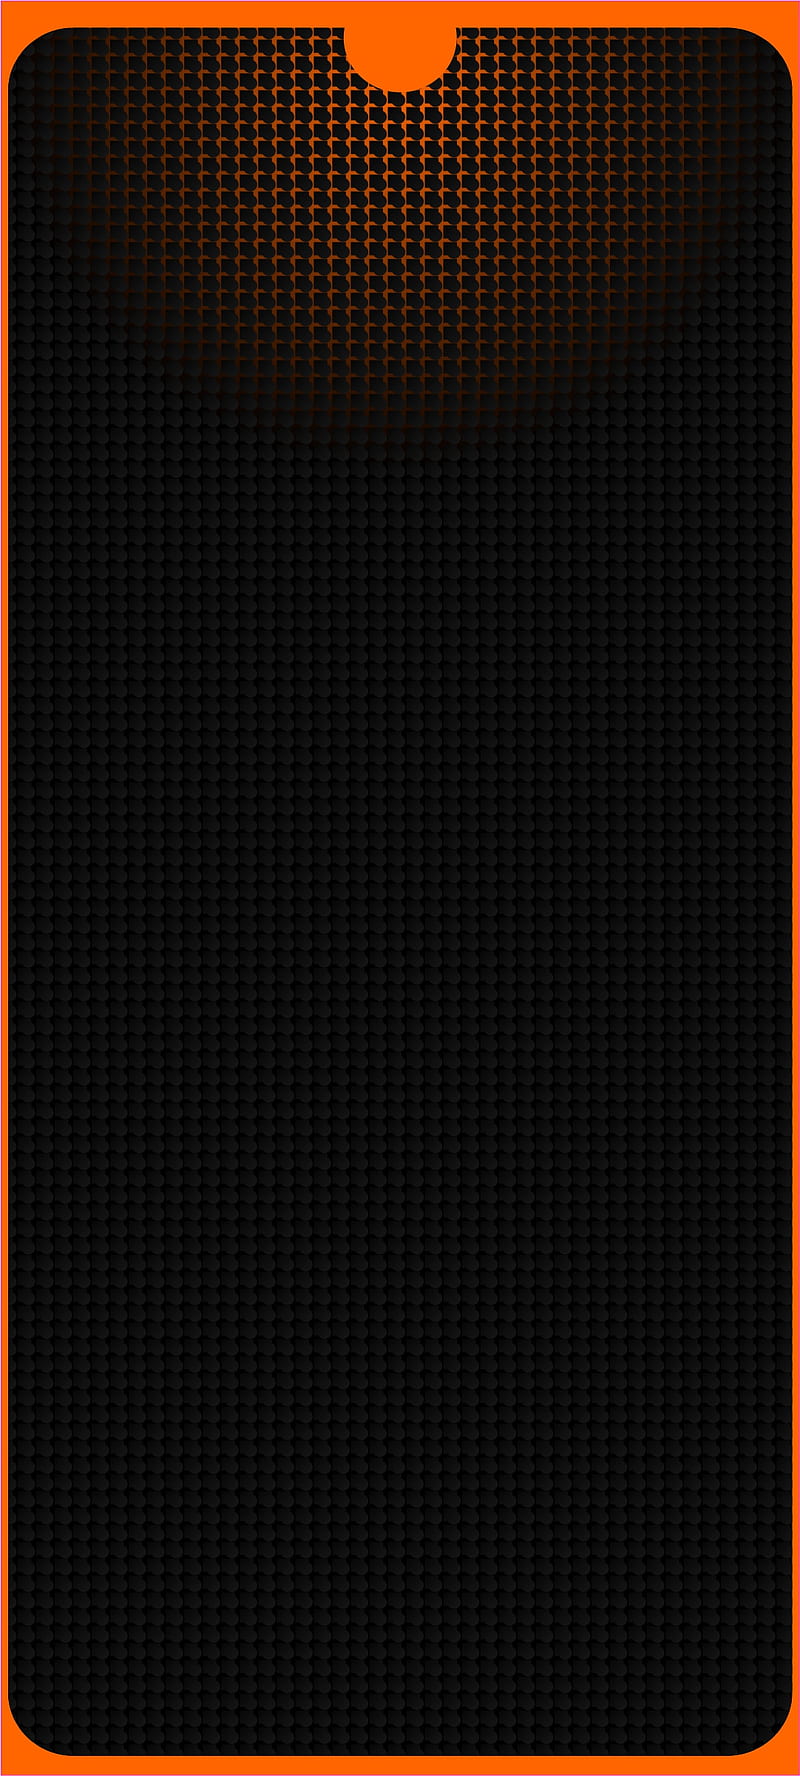 S21 ultra, orange, samsung, neon, design, black, dark, pattern, HD phone wallpaper